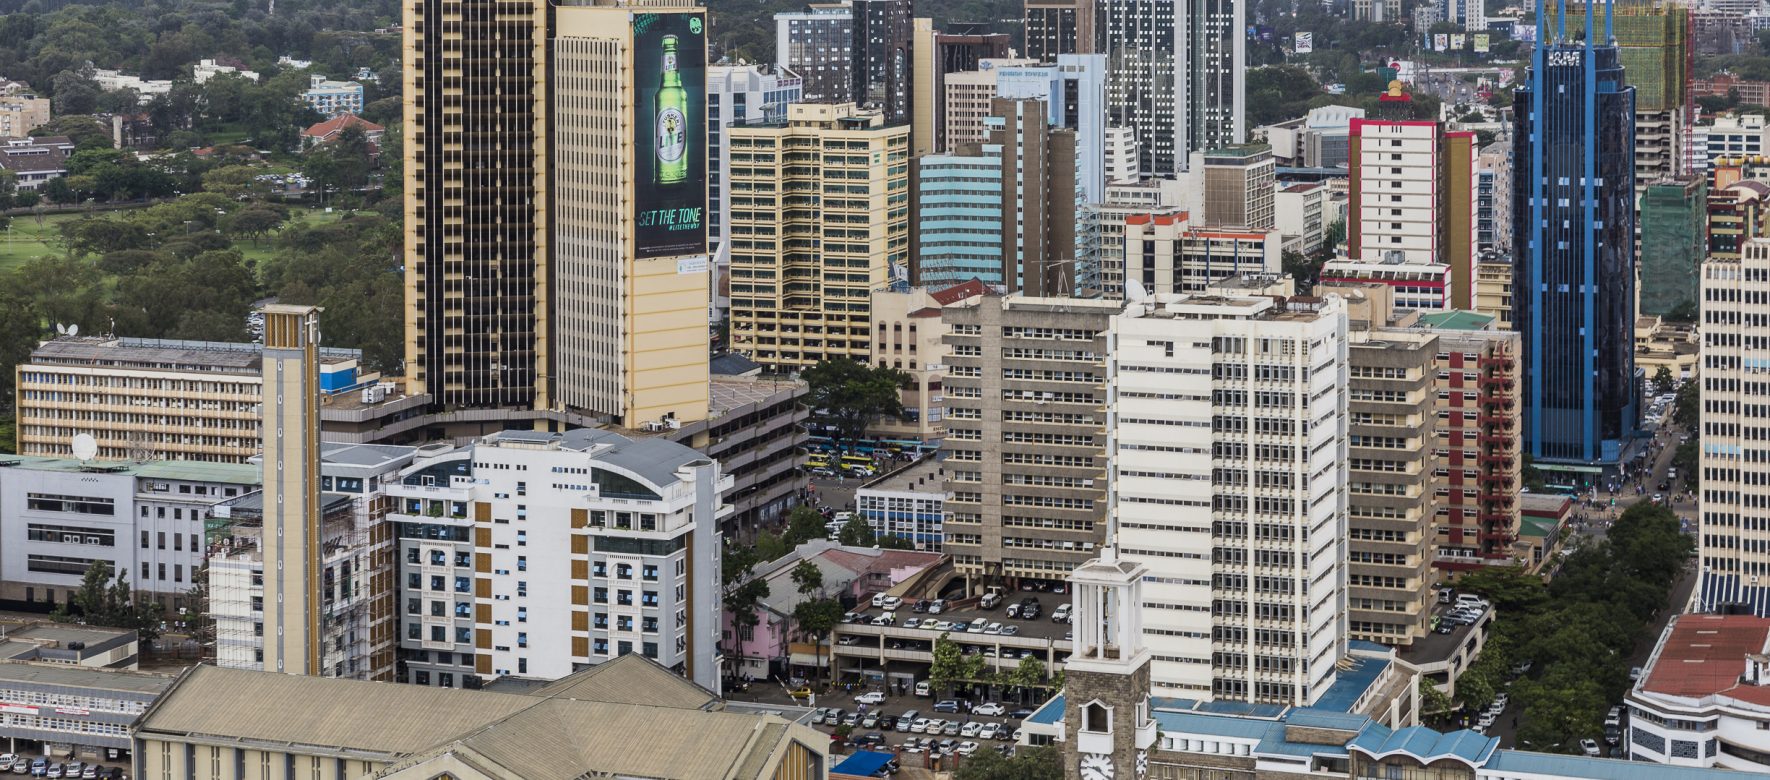 Nairobi City centre including Basilica